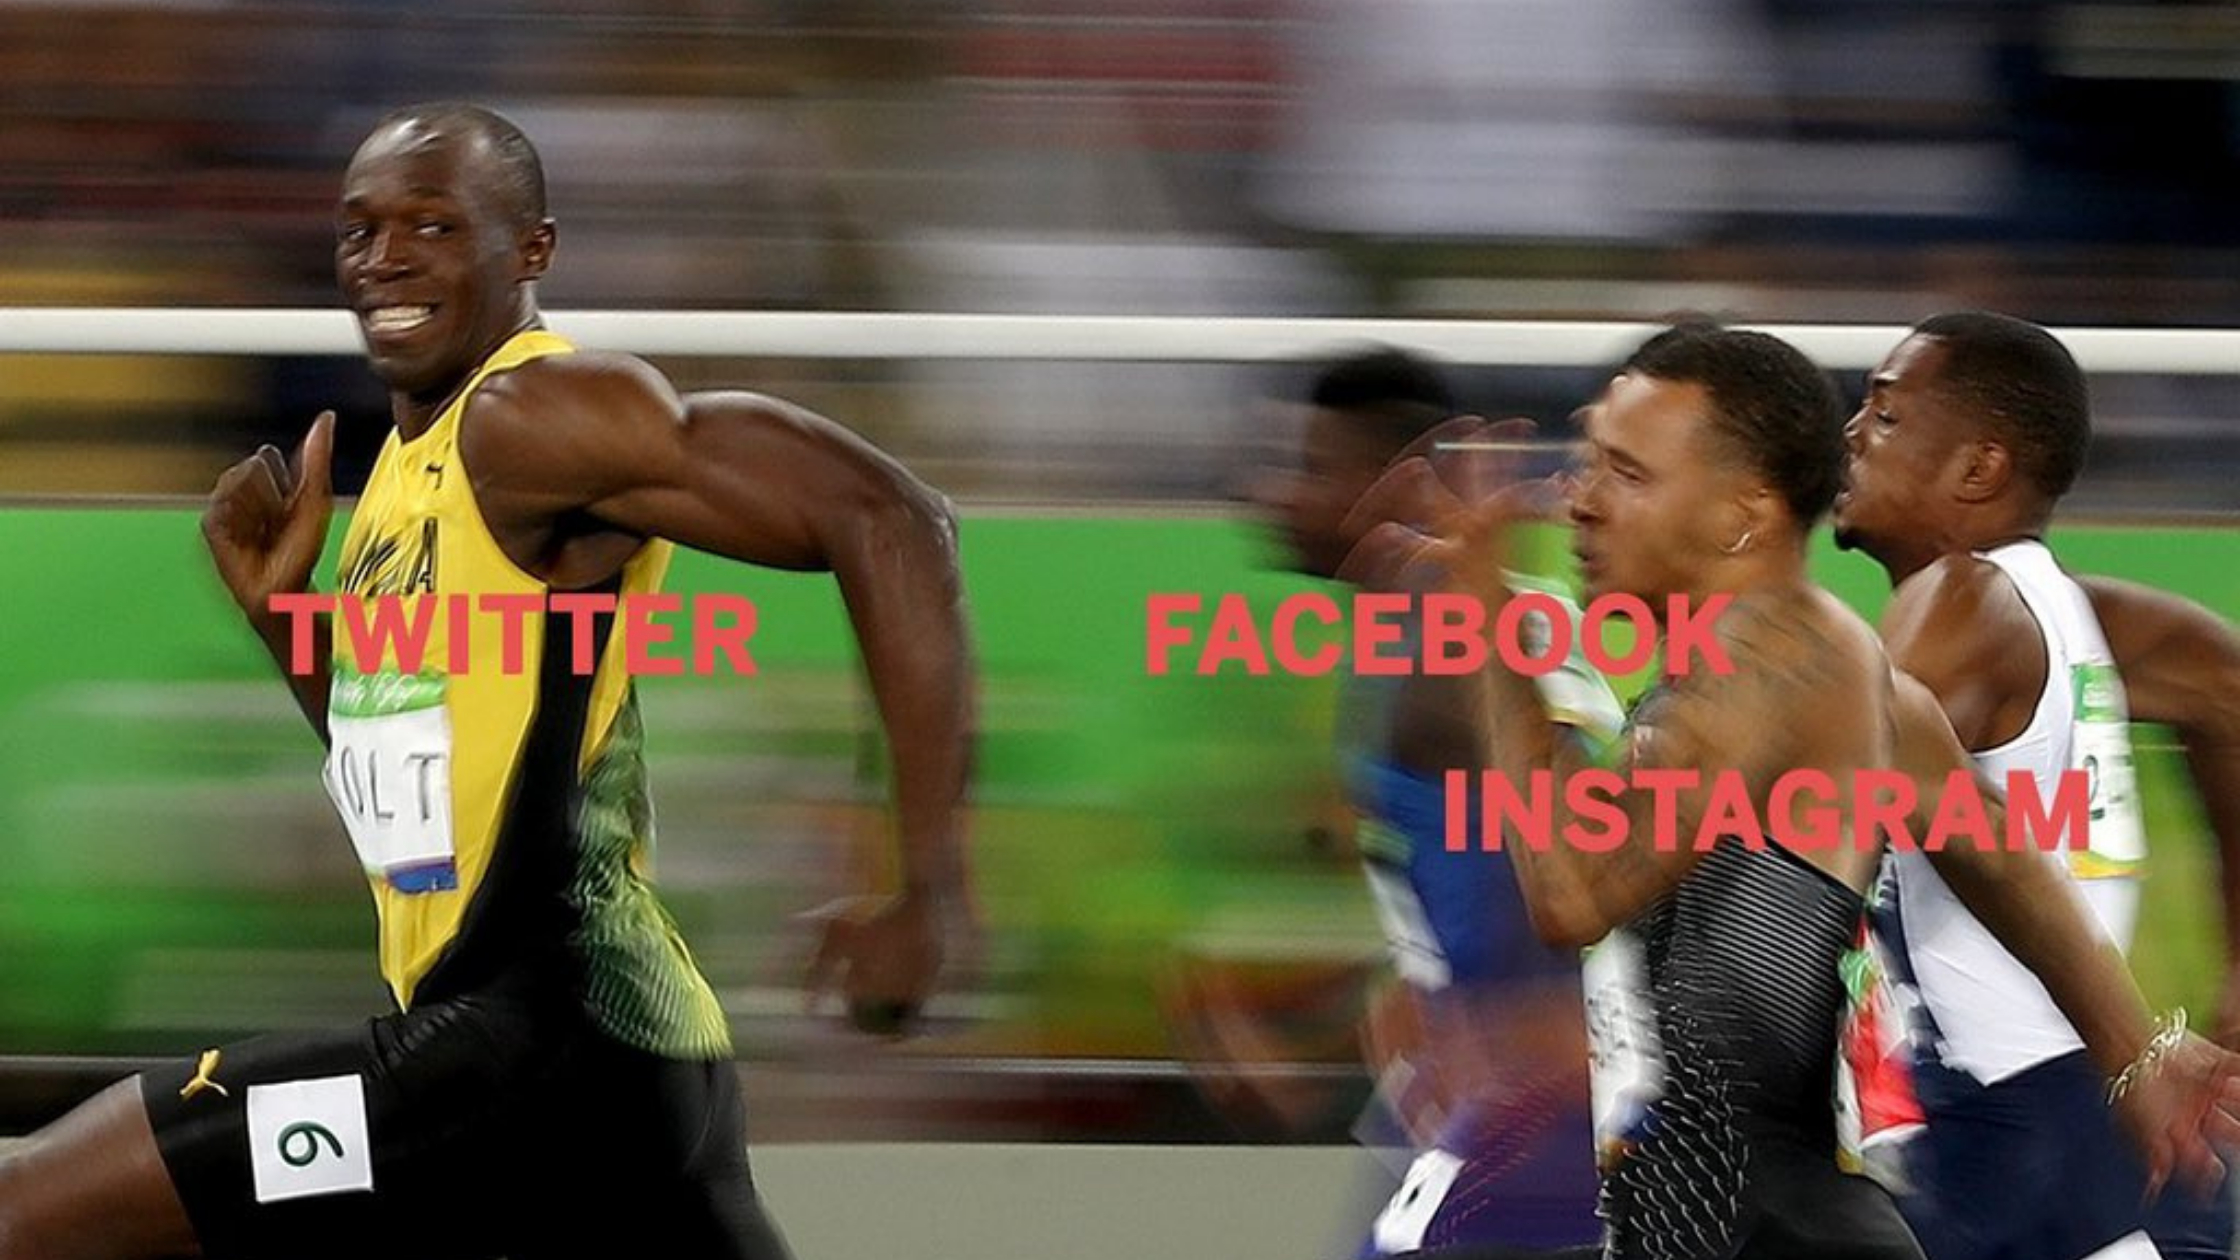 Twitter - Facebook, WhatsApp, Instagram down